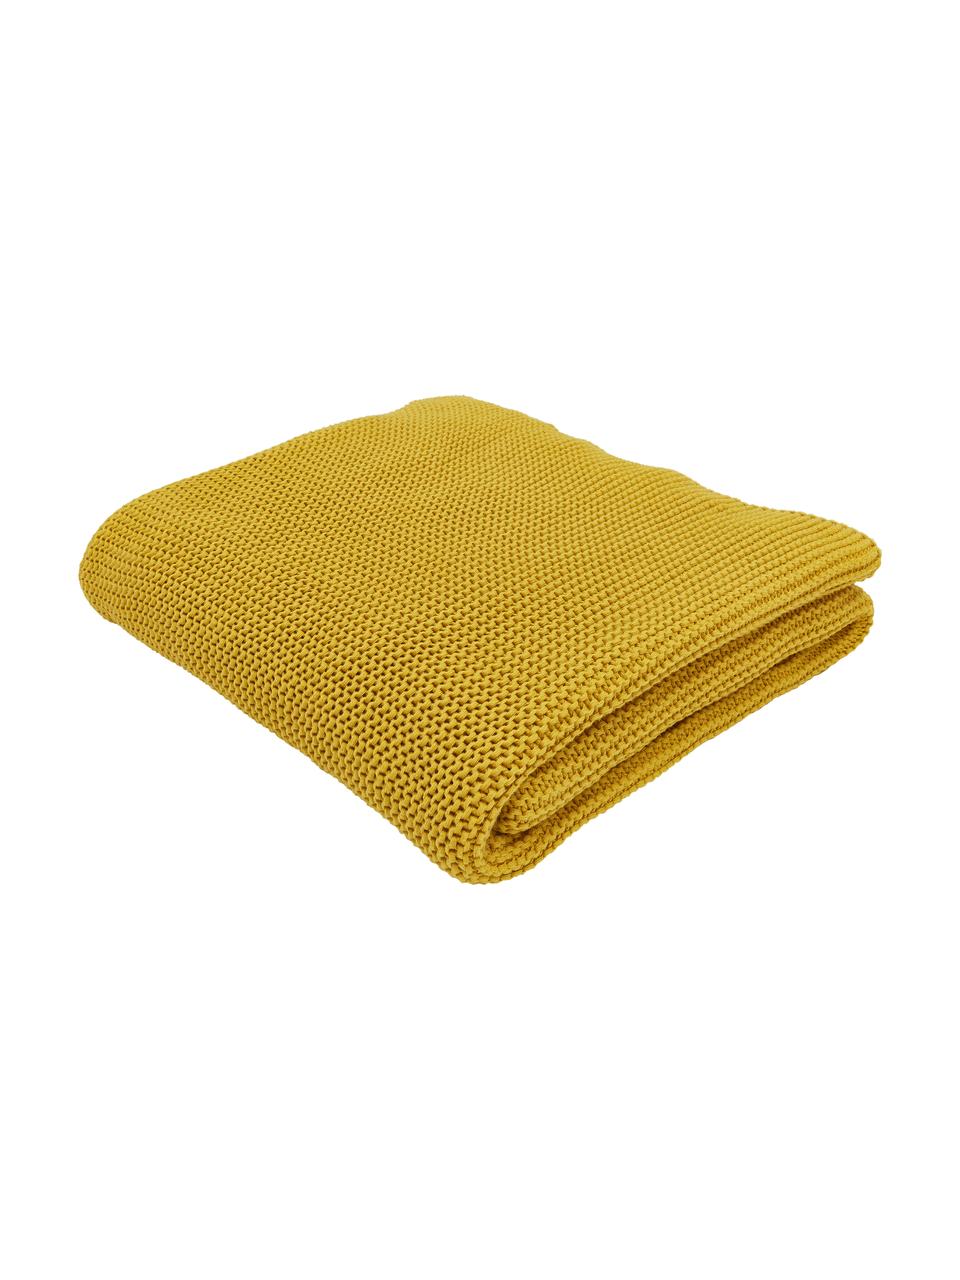 Coperta a maglia in cotone organico color giallo senape Adalyn, 100% cotone organico, certificato GOTS, Giallo senape, Larg. 150 x Lung. 200 cm